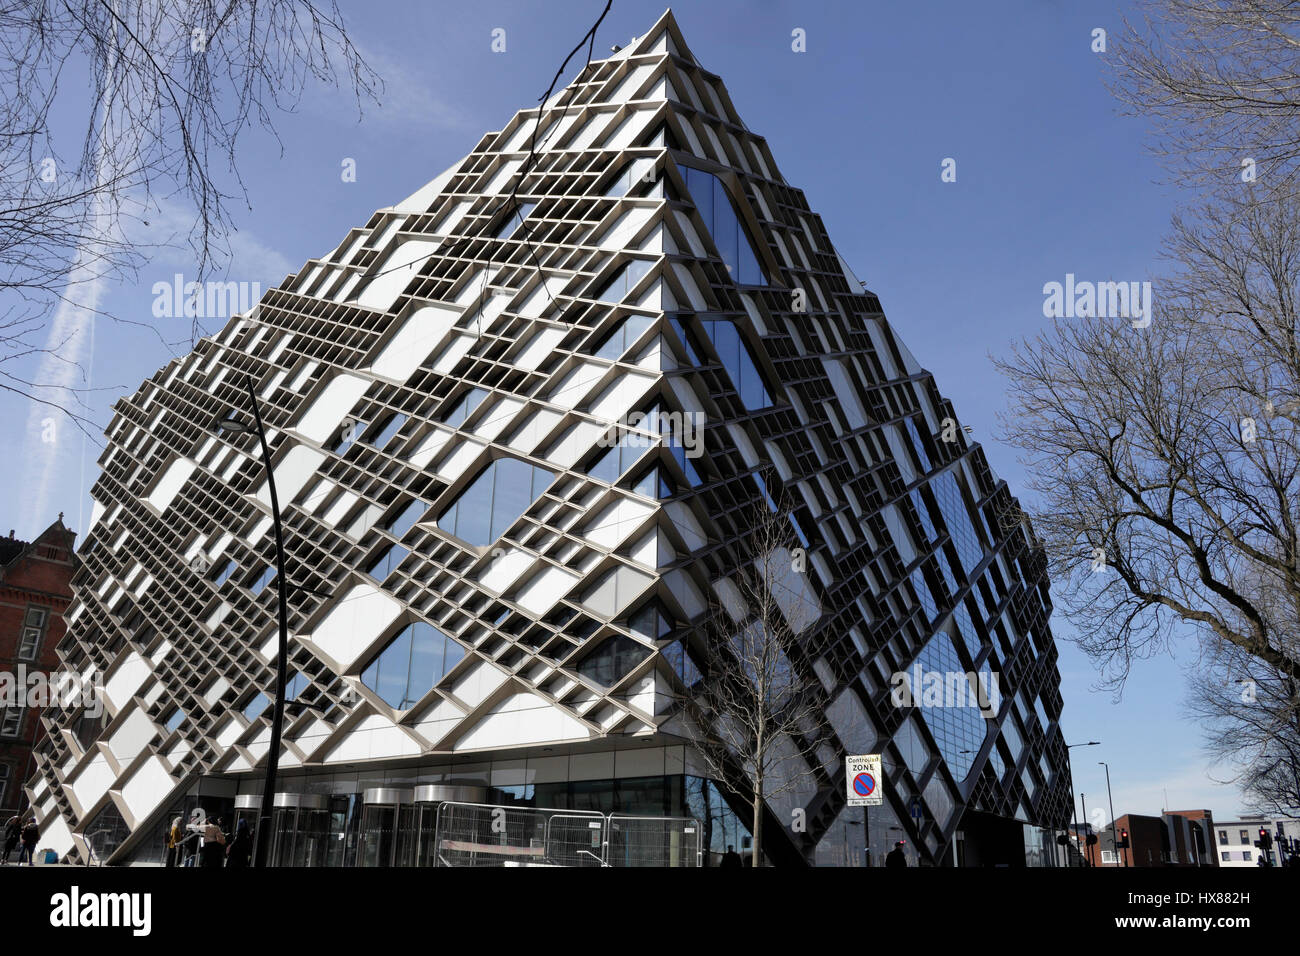 Diamond Building presso l'università di Sheffield, Inghilterra, Regno Unito, vincitore di un premio per l'architettura moderna, l'istruzione superiore britannica Foto Stock